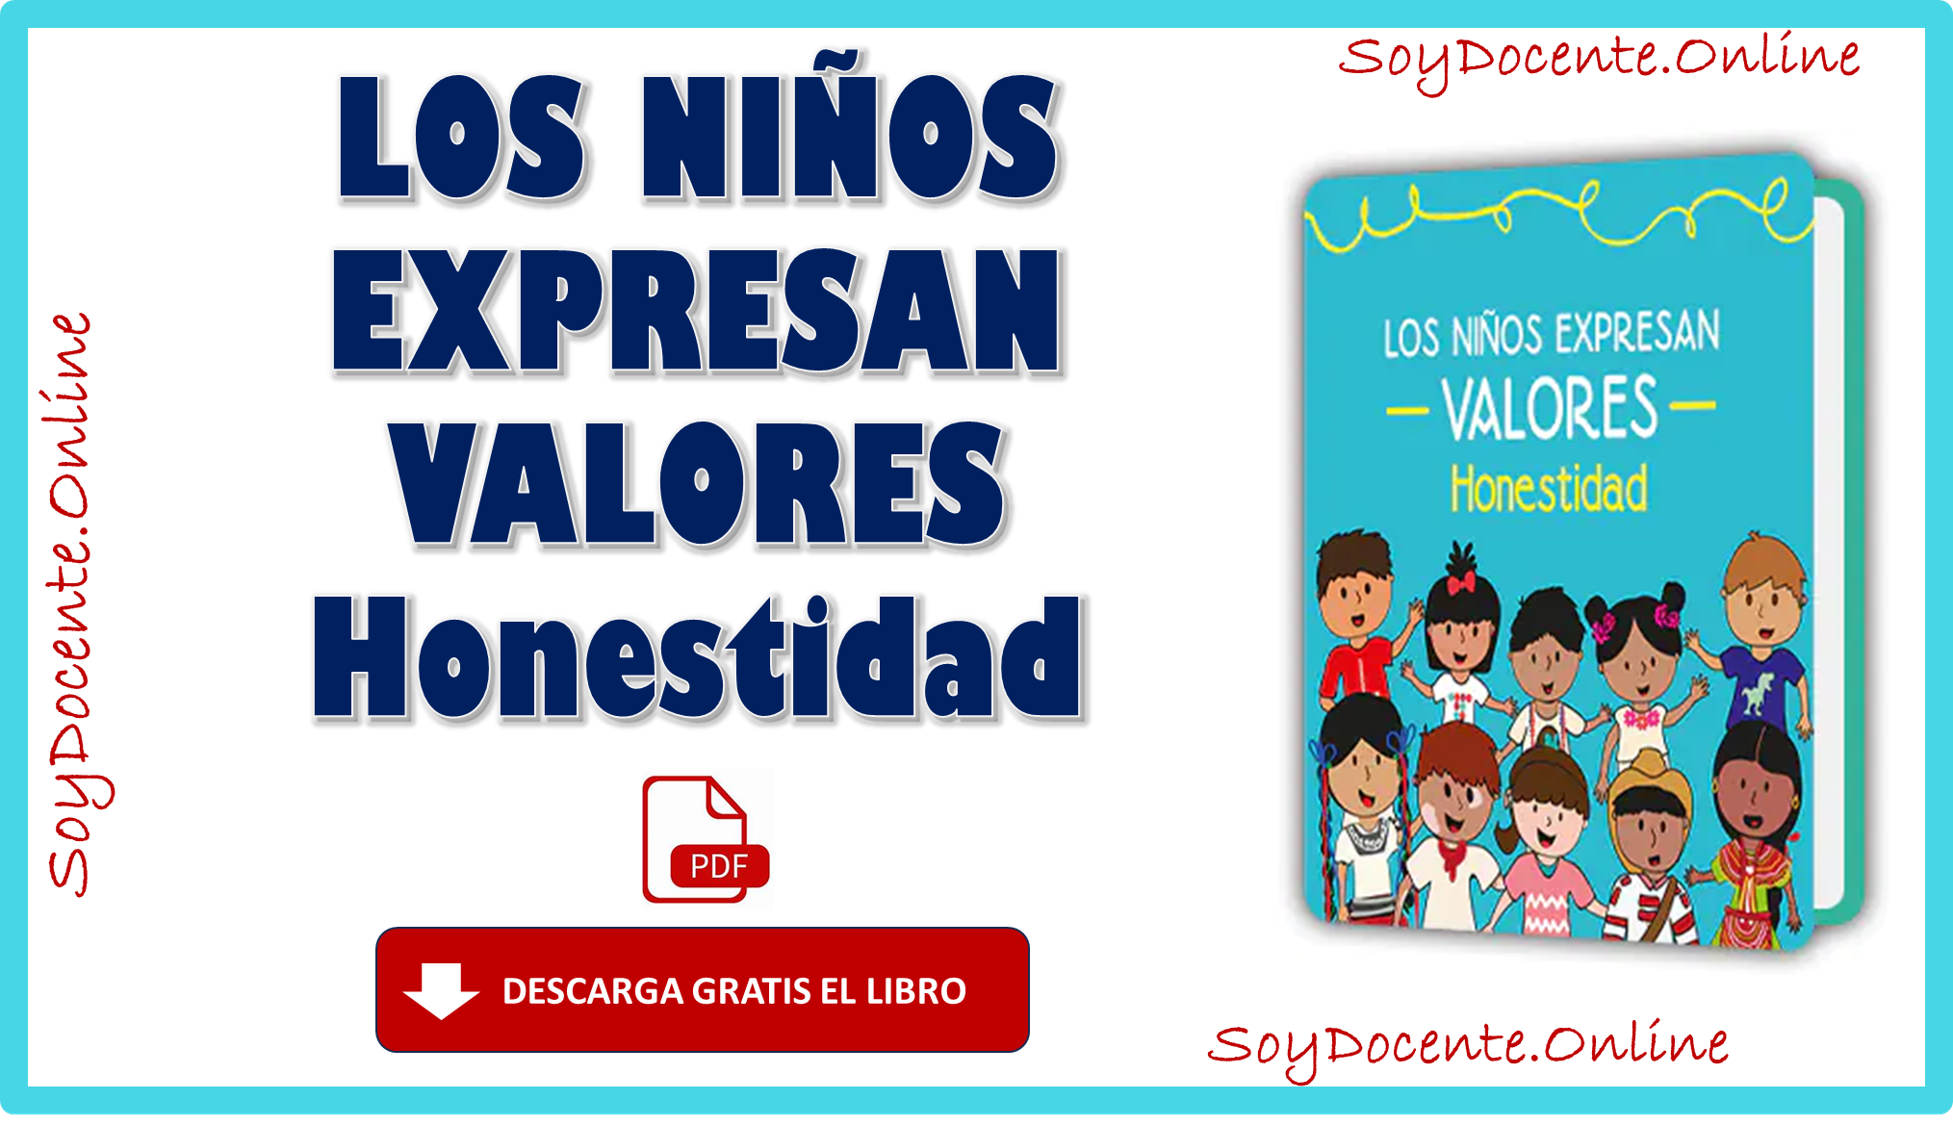 Descarga aquí el libro de LOS NIÑOS EXPRESAN VALORES HONESTIDAD, obra oficial de la SEP, en distribución por la CONALITEG